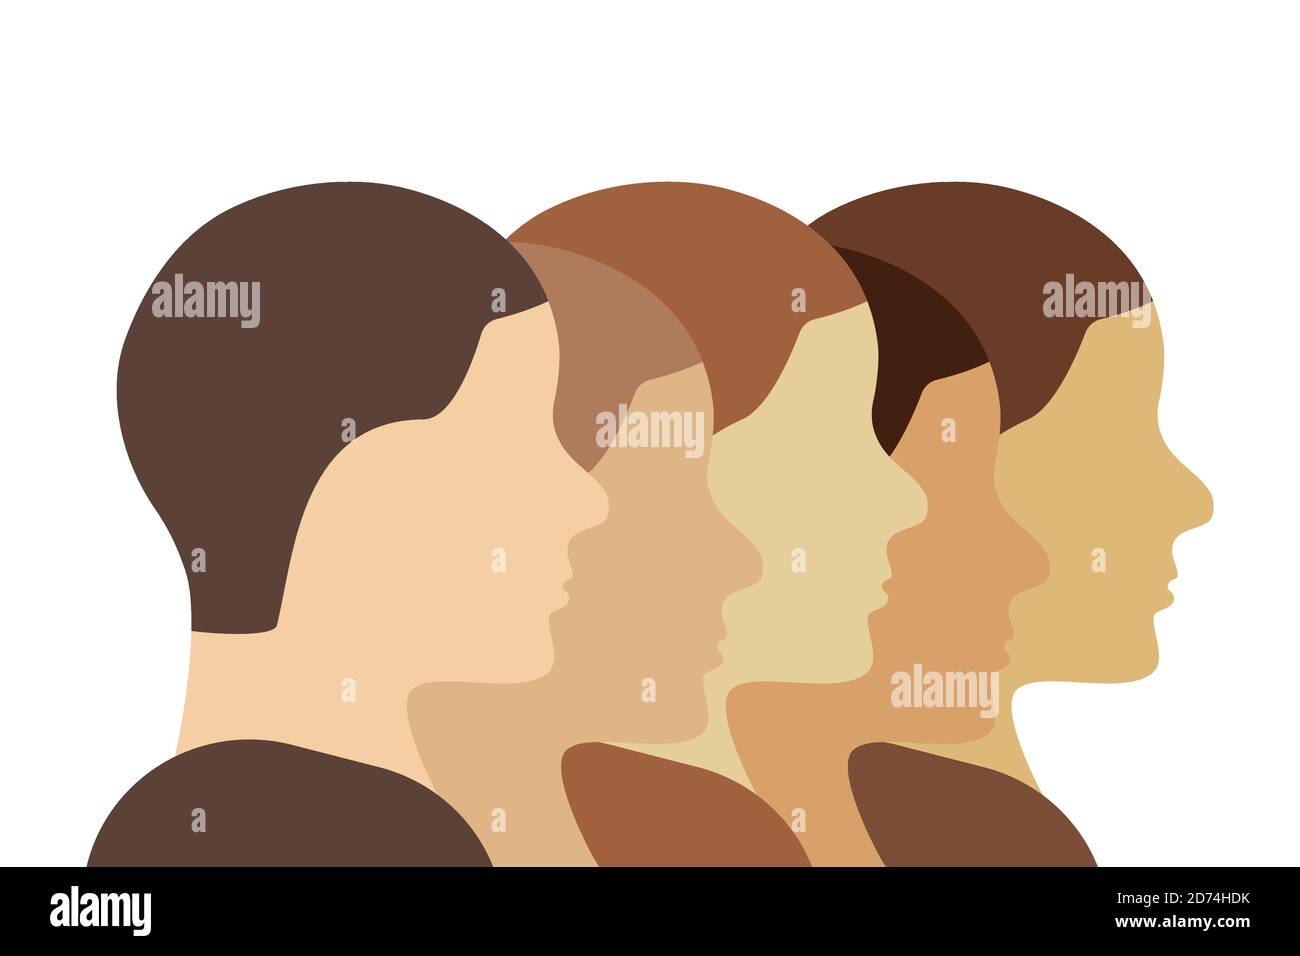 Etnia caucasica (bianca) illustrazione della gente. I profili delle teste umane in una fila mostrano diversità e unità. Vettore line art. Illustrazione Vettoriale